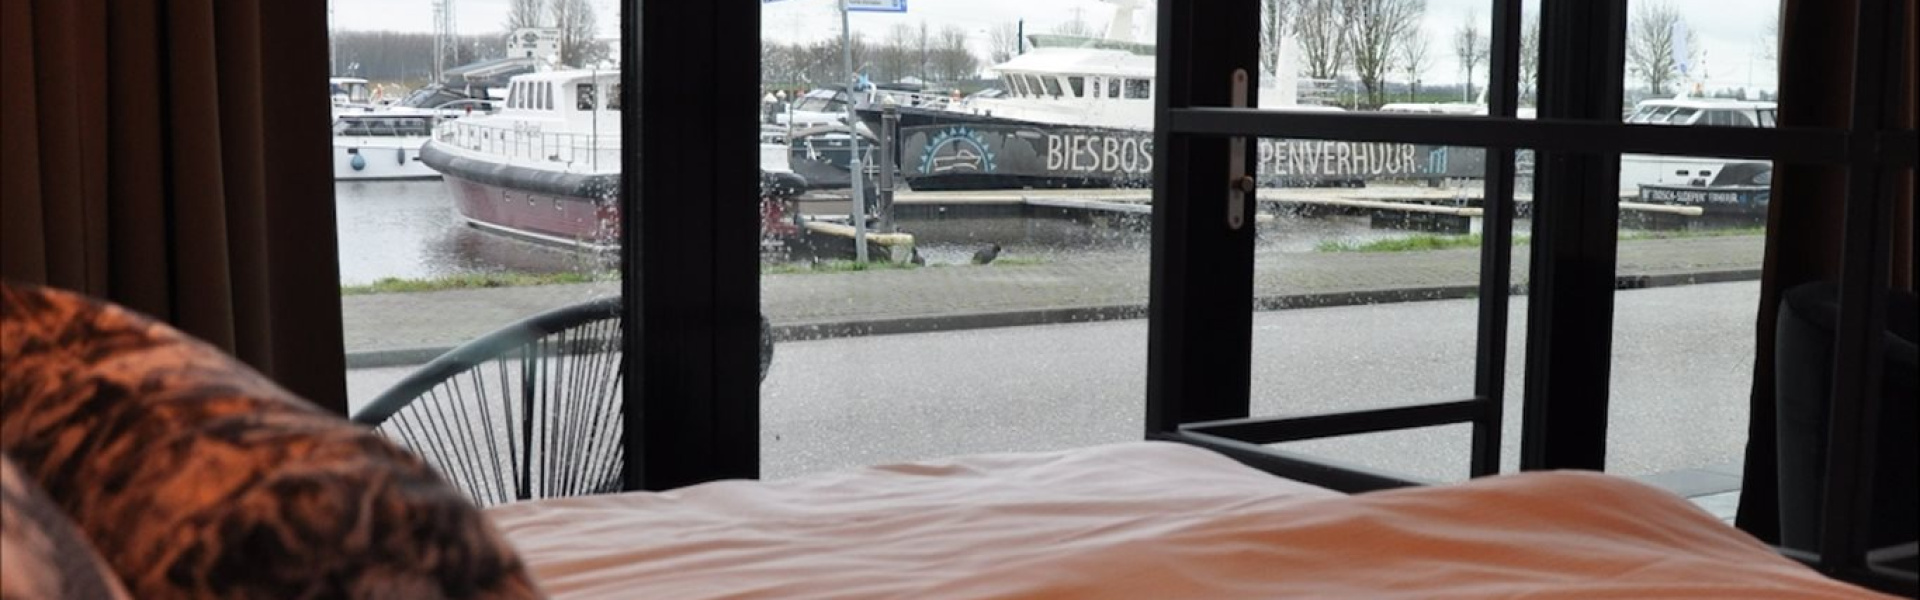 Standaard hotelkamer Havenzicht van Hotel Biesbosch